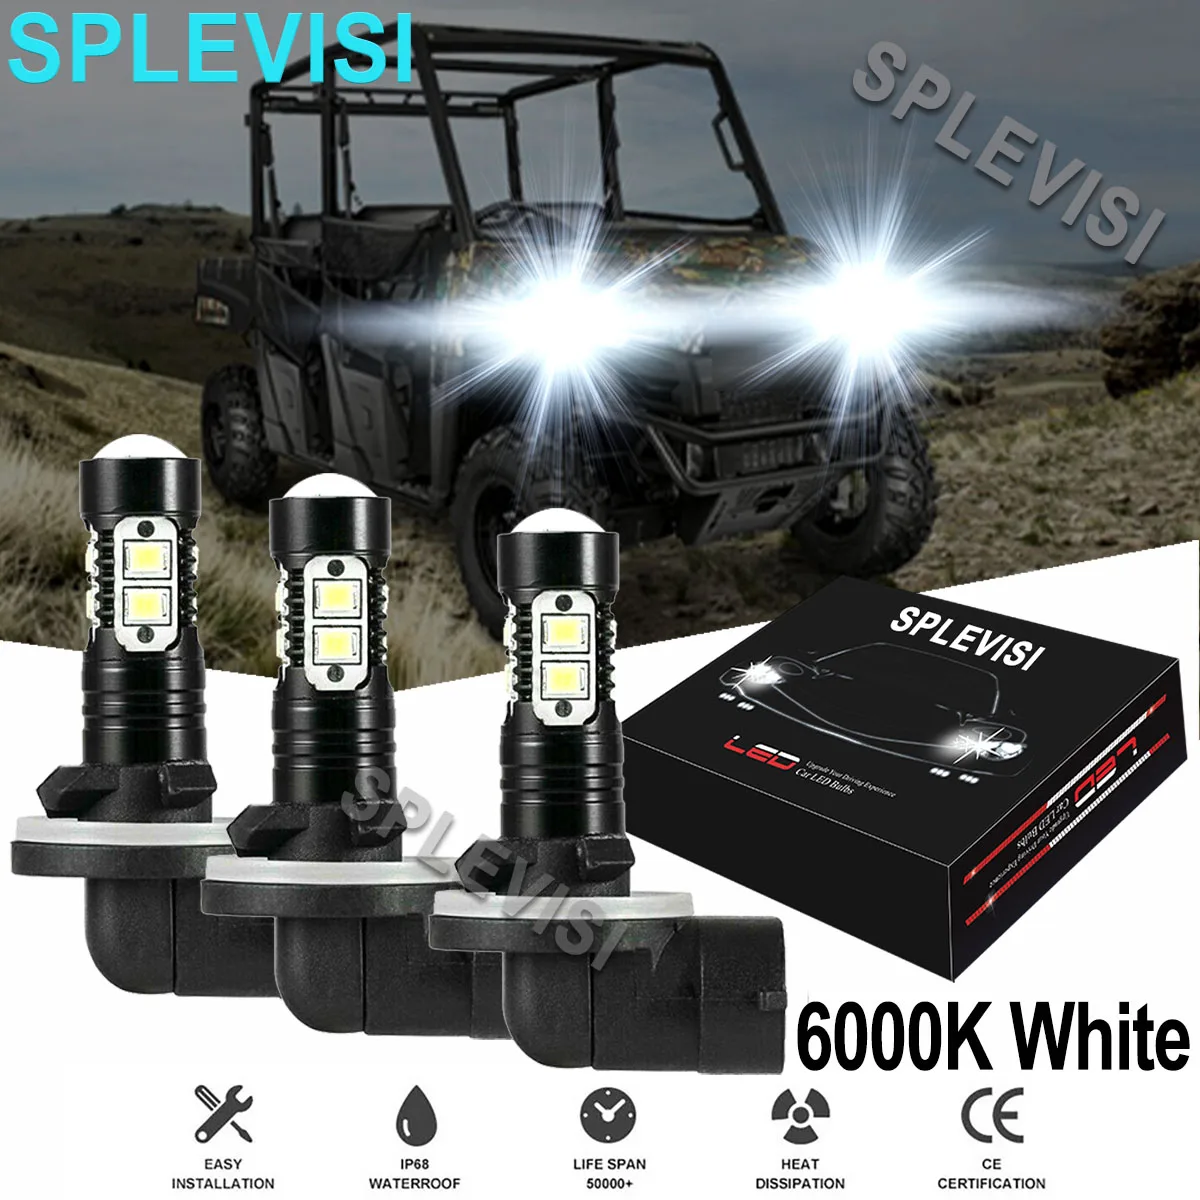 3PCS 6000K Bright White  50W LED Headlight Bulbs Kit For POLARIS RANGER400 500 570 700 800 900 & ext ev xp models 2005 2006-2018